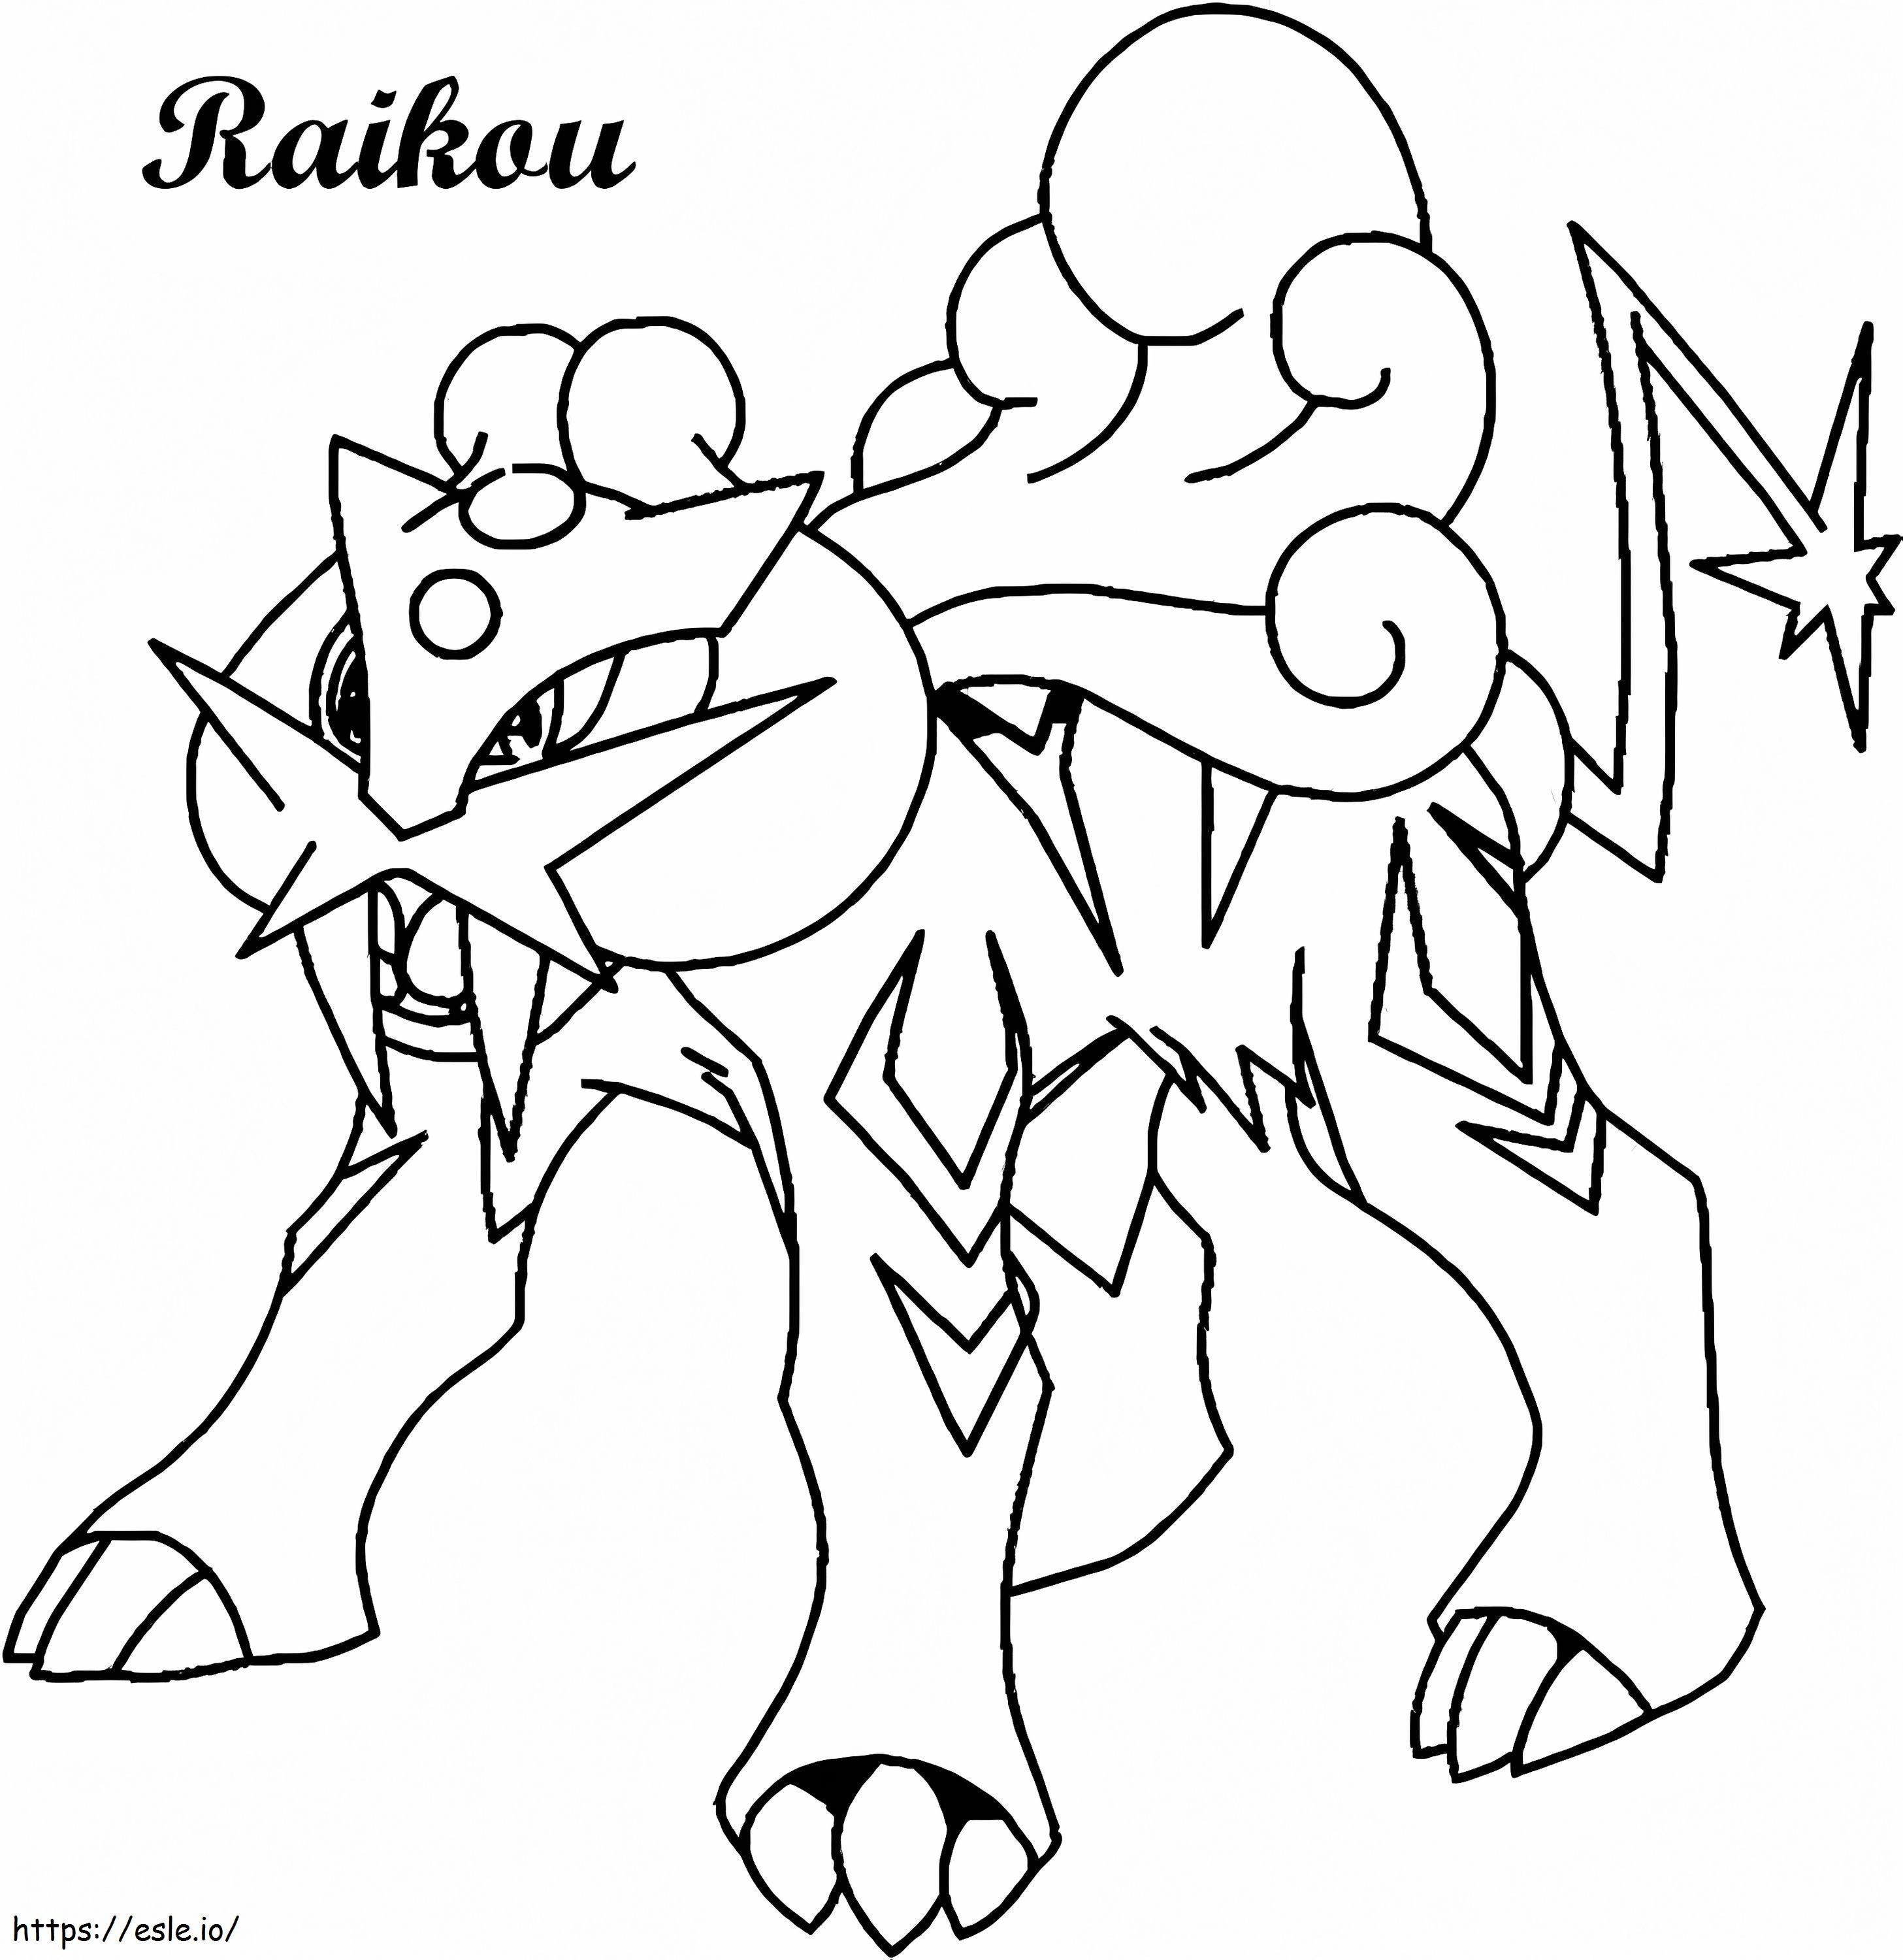 Coloriage Raikou 4 à imprimer dessin